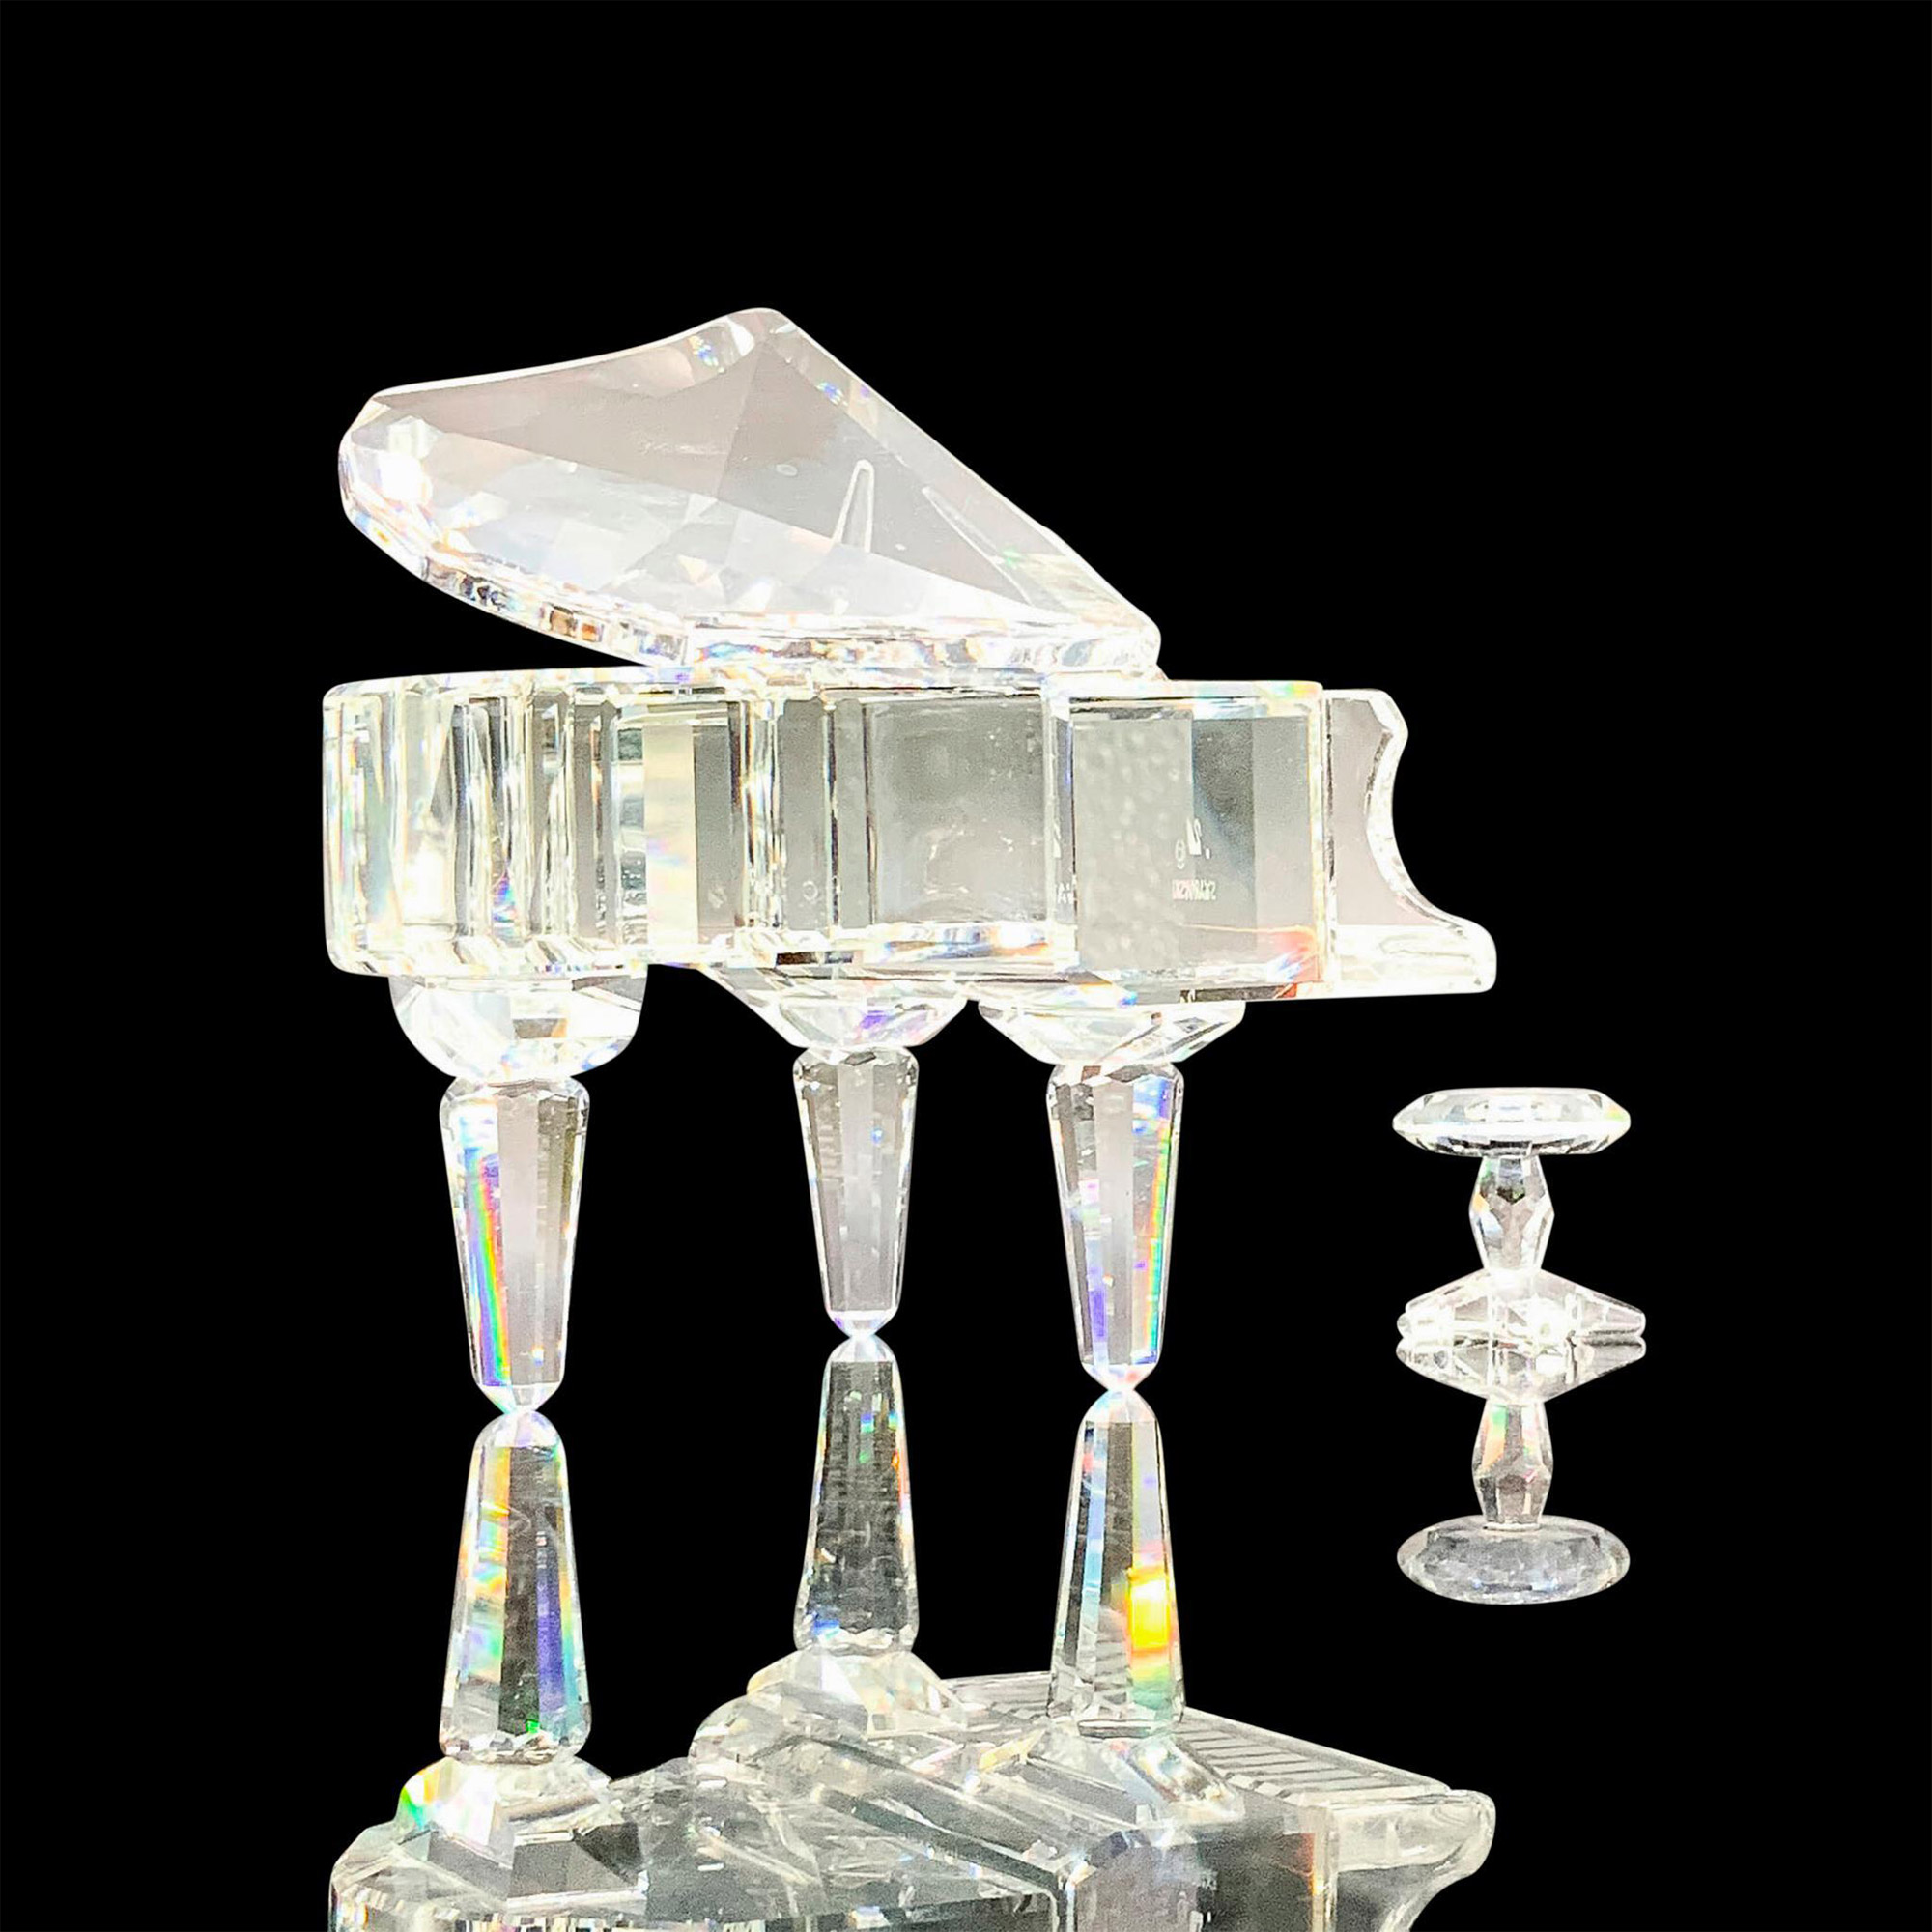 Pair of Swarovski Crystal Figurines, Piano and Stool - Image 2 of 4